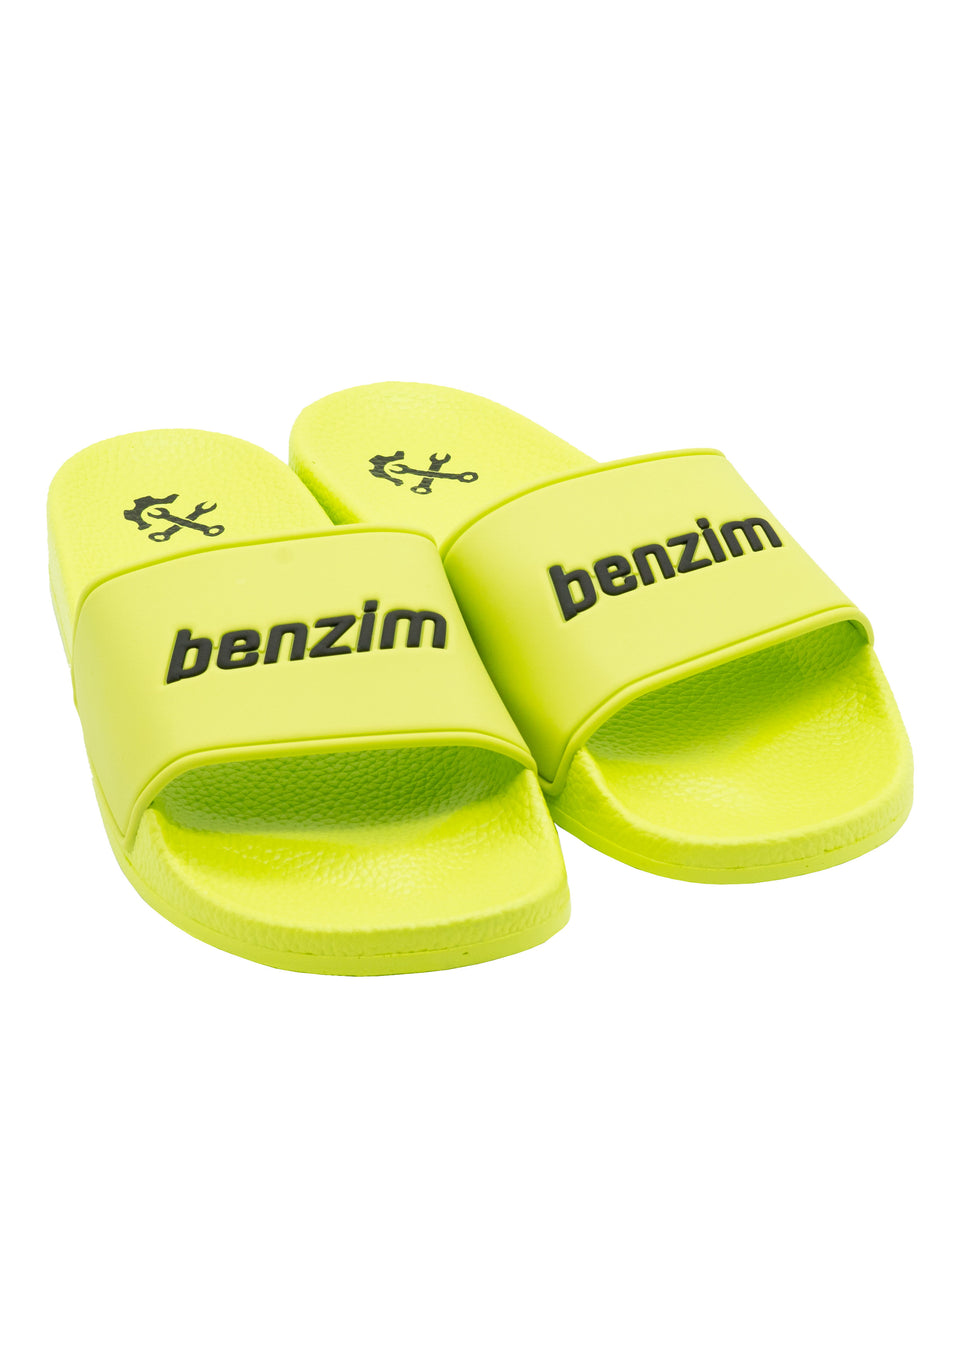 benziletten, neongelbe Badeschlappen mit benzim-Logo